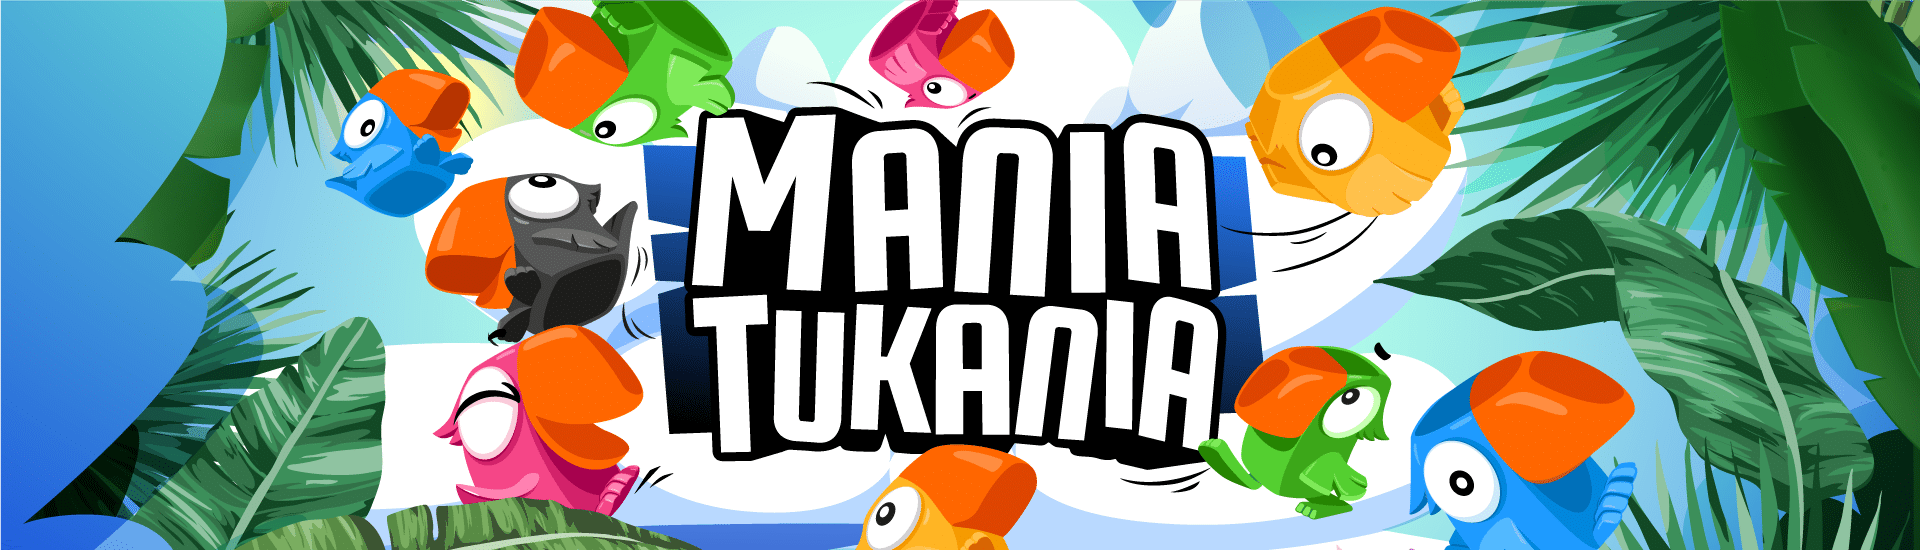 Mania Tukania - Gra zręcznościowa z figurkami w kształcie tukanów.